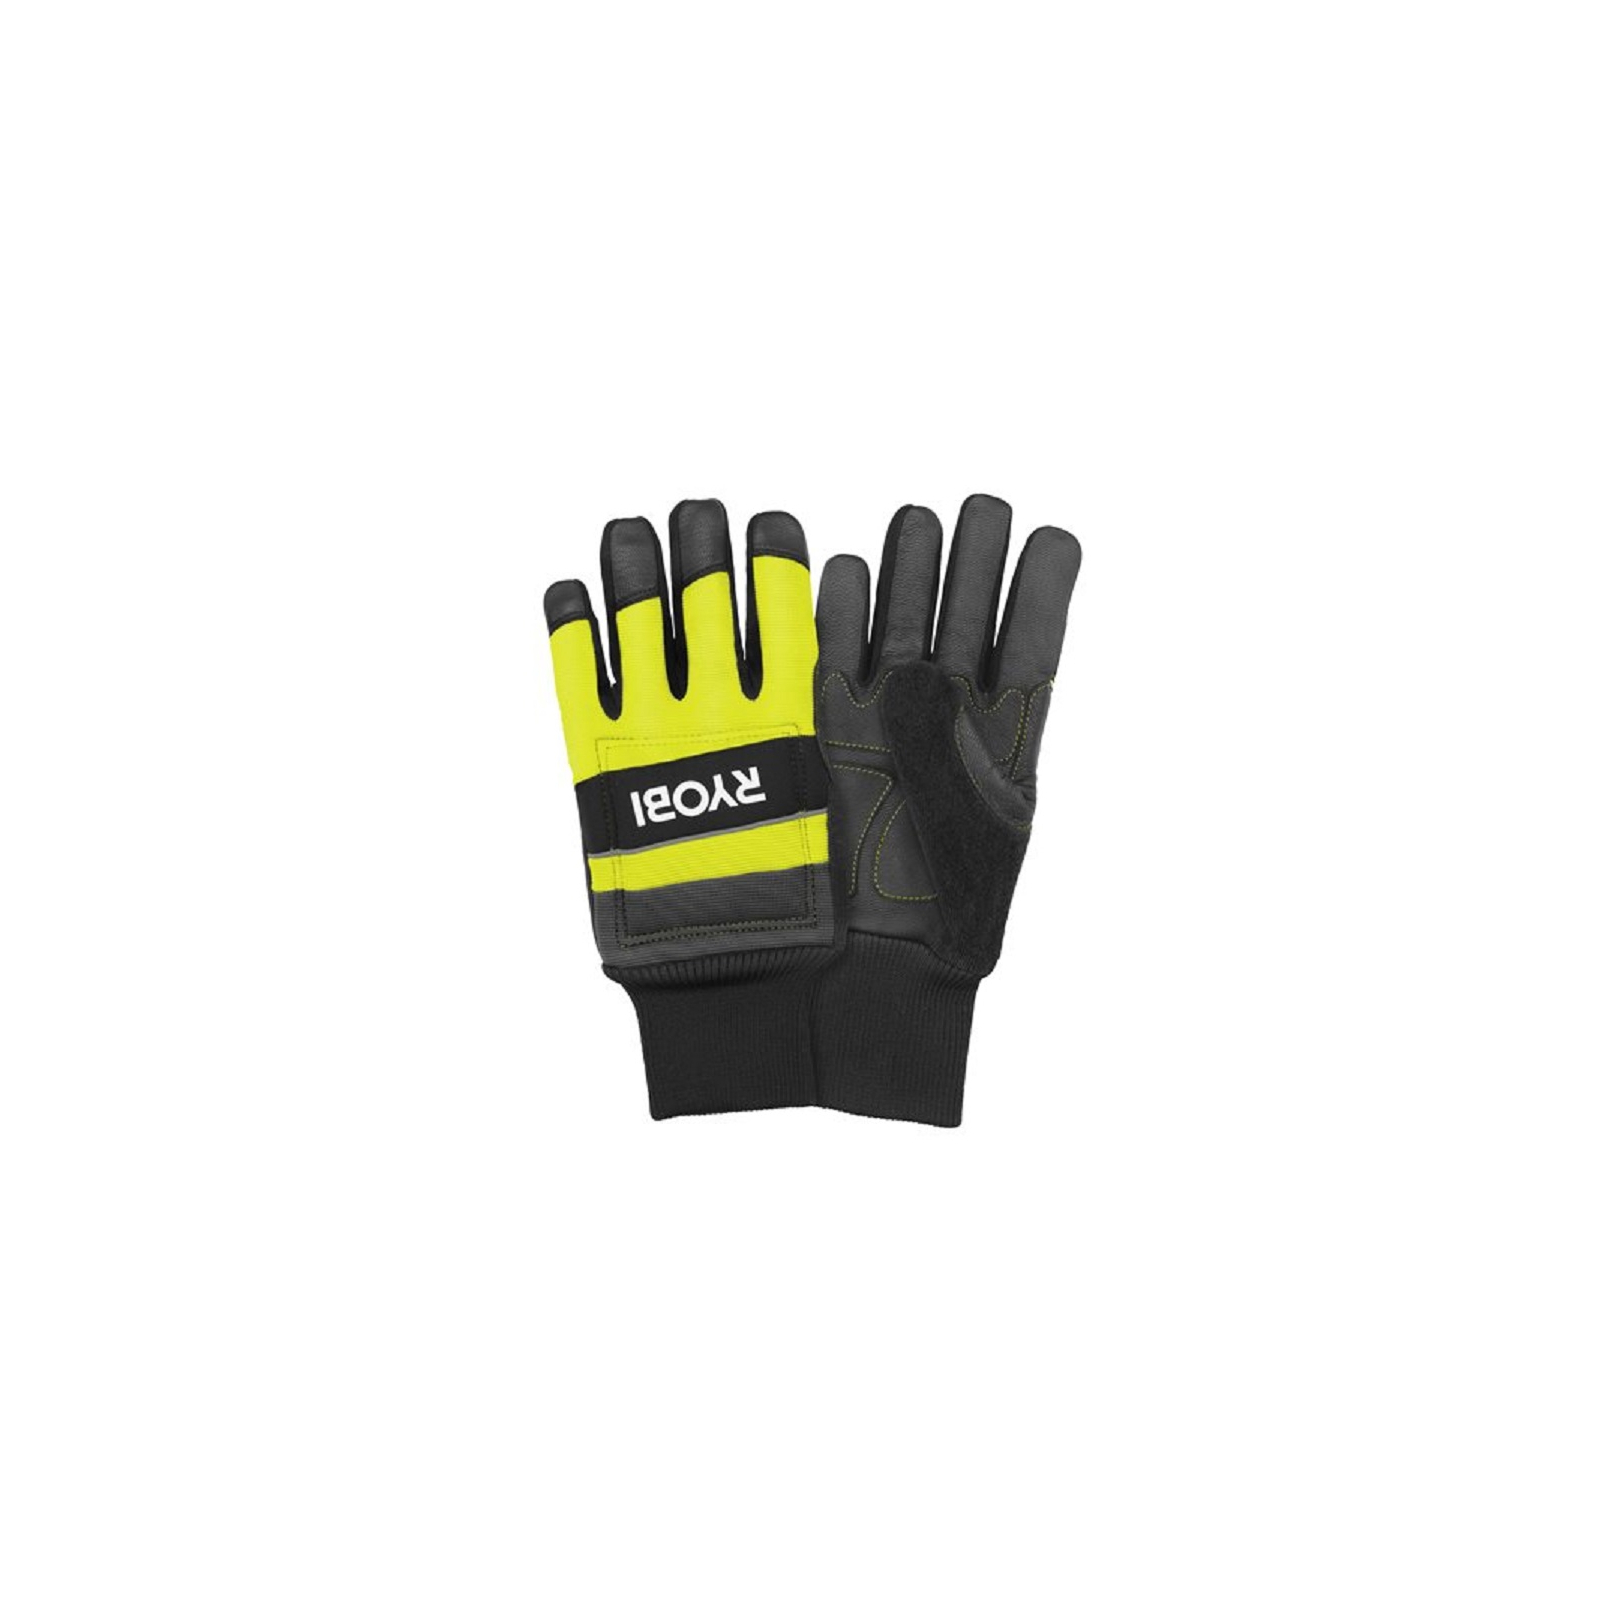 Защитные перчатки Ryobi RAC258M для работы с цепной пилой, влагозащита, р. М (5132005710) изображение 3